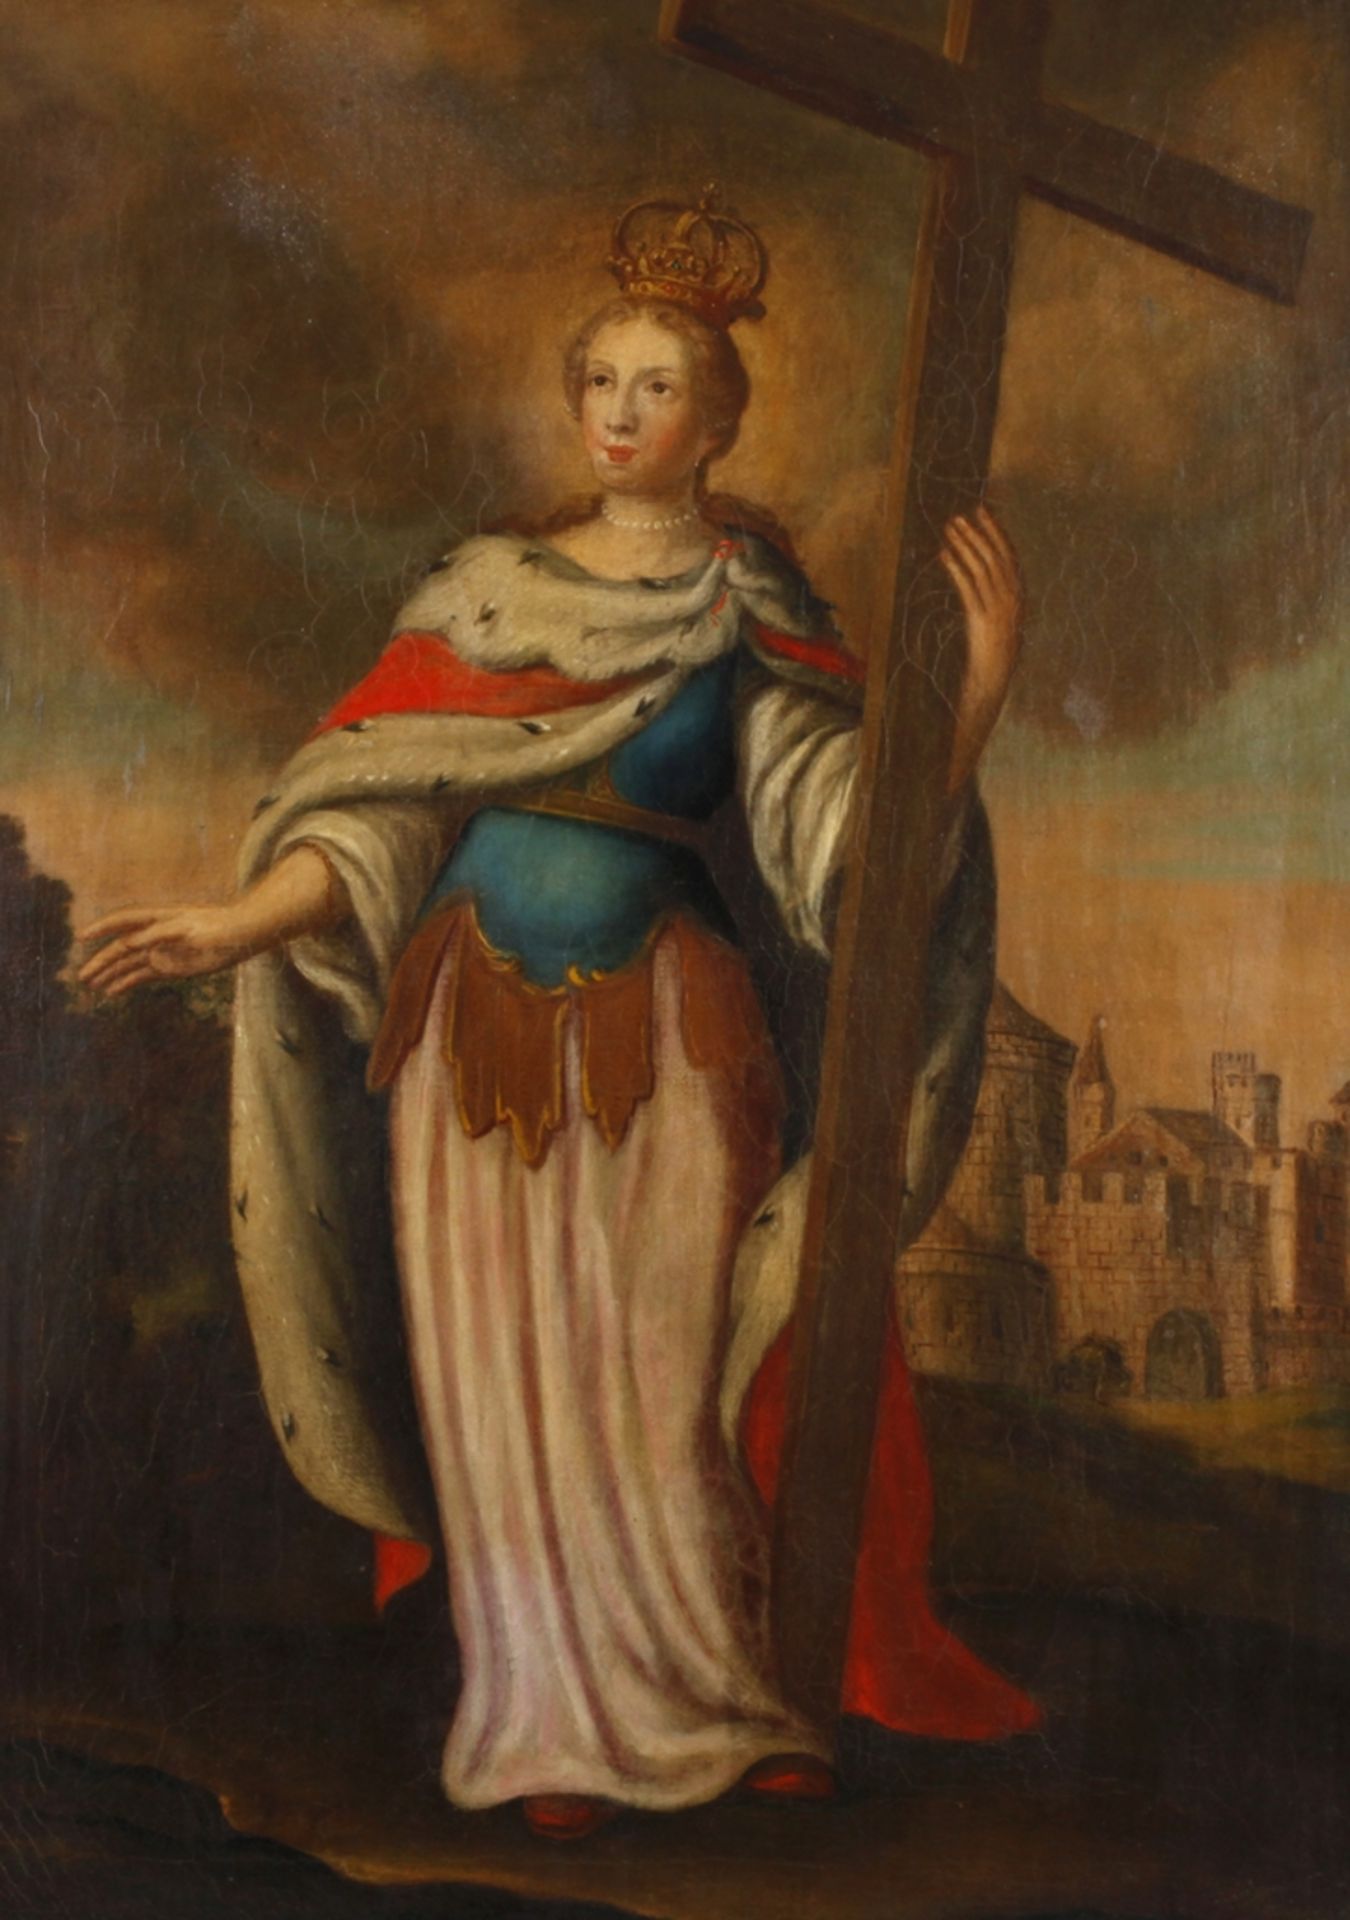 Helena von Konstantinopel barocke Darstellung der Mutter Kaiser Konstantins des Großen, Flavia Iulia